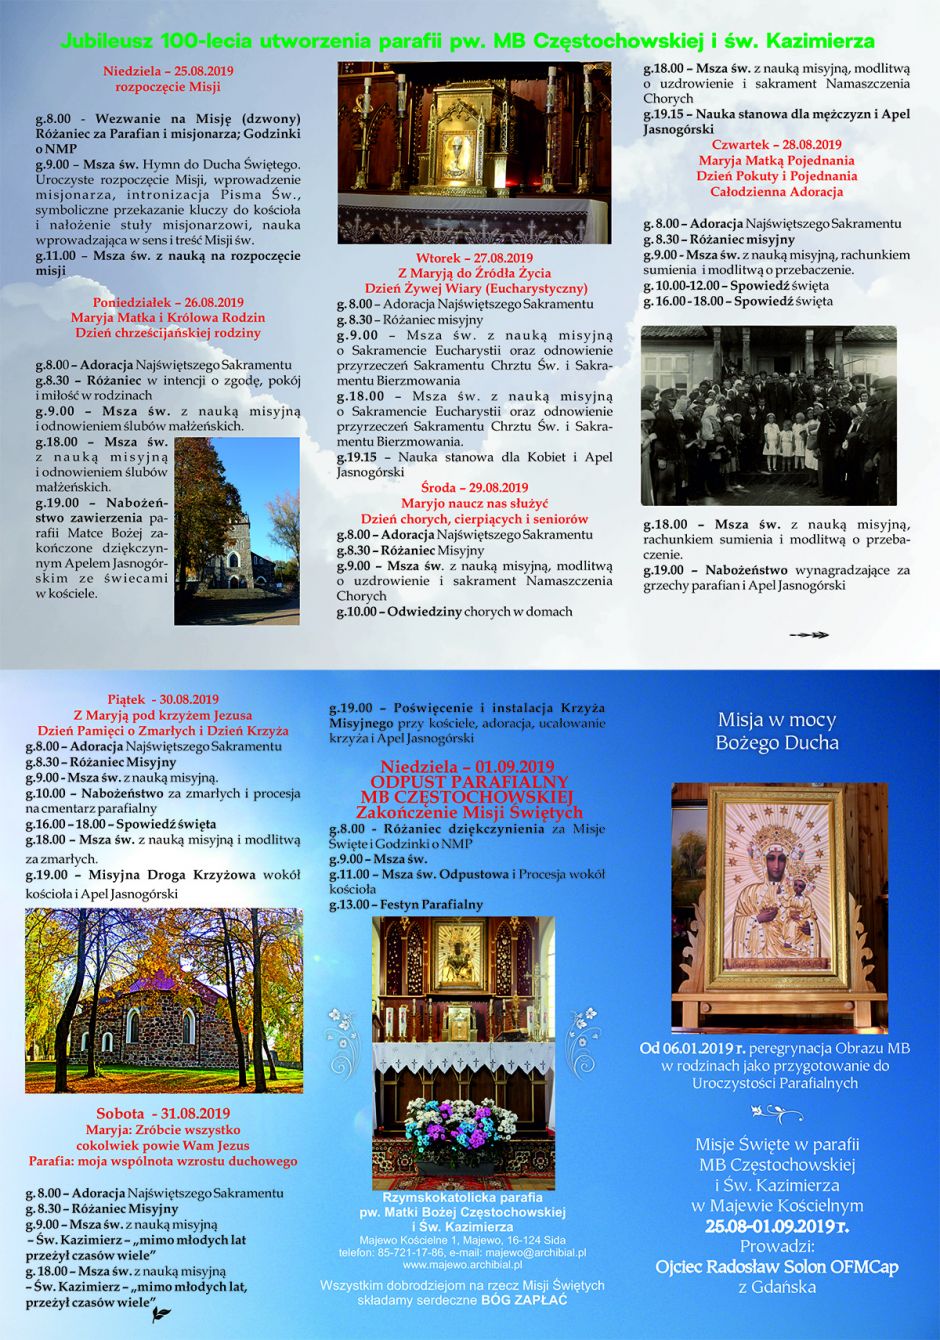 Obchody 100-lecia parafii w Majewie